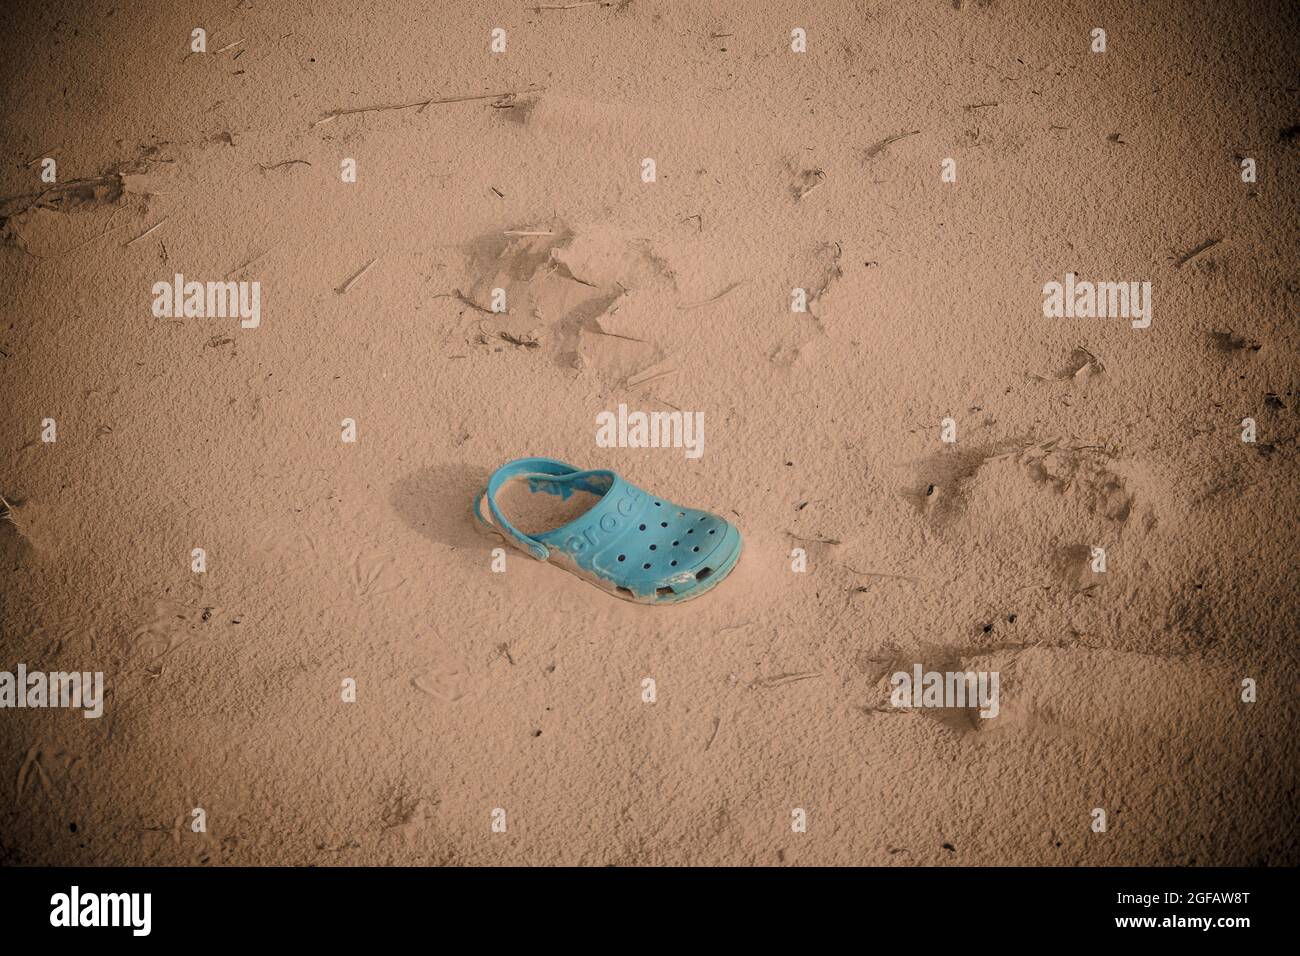 Sabot de croc turquoise classique abandonné sur les dunes de sable. La chaussure de couleur « Digital aqua » est partiellement enfouie dans le sable. Banque D'Images